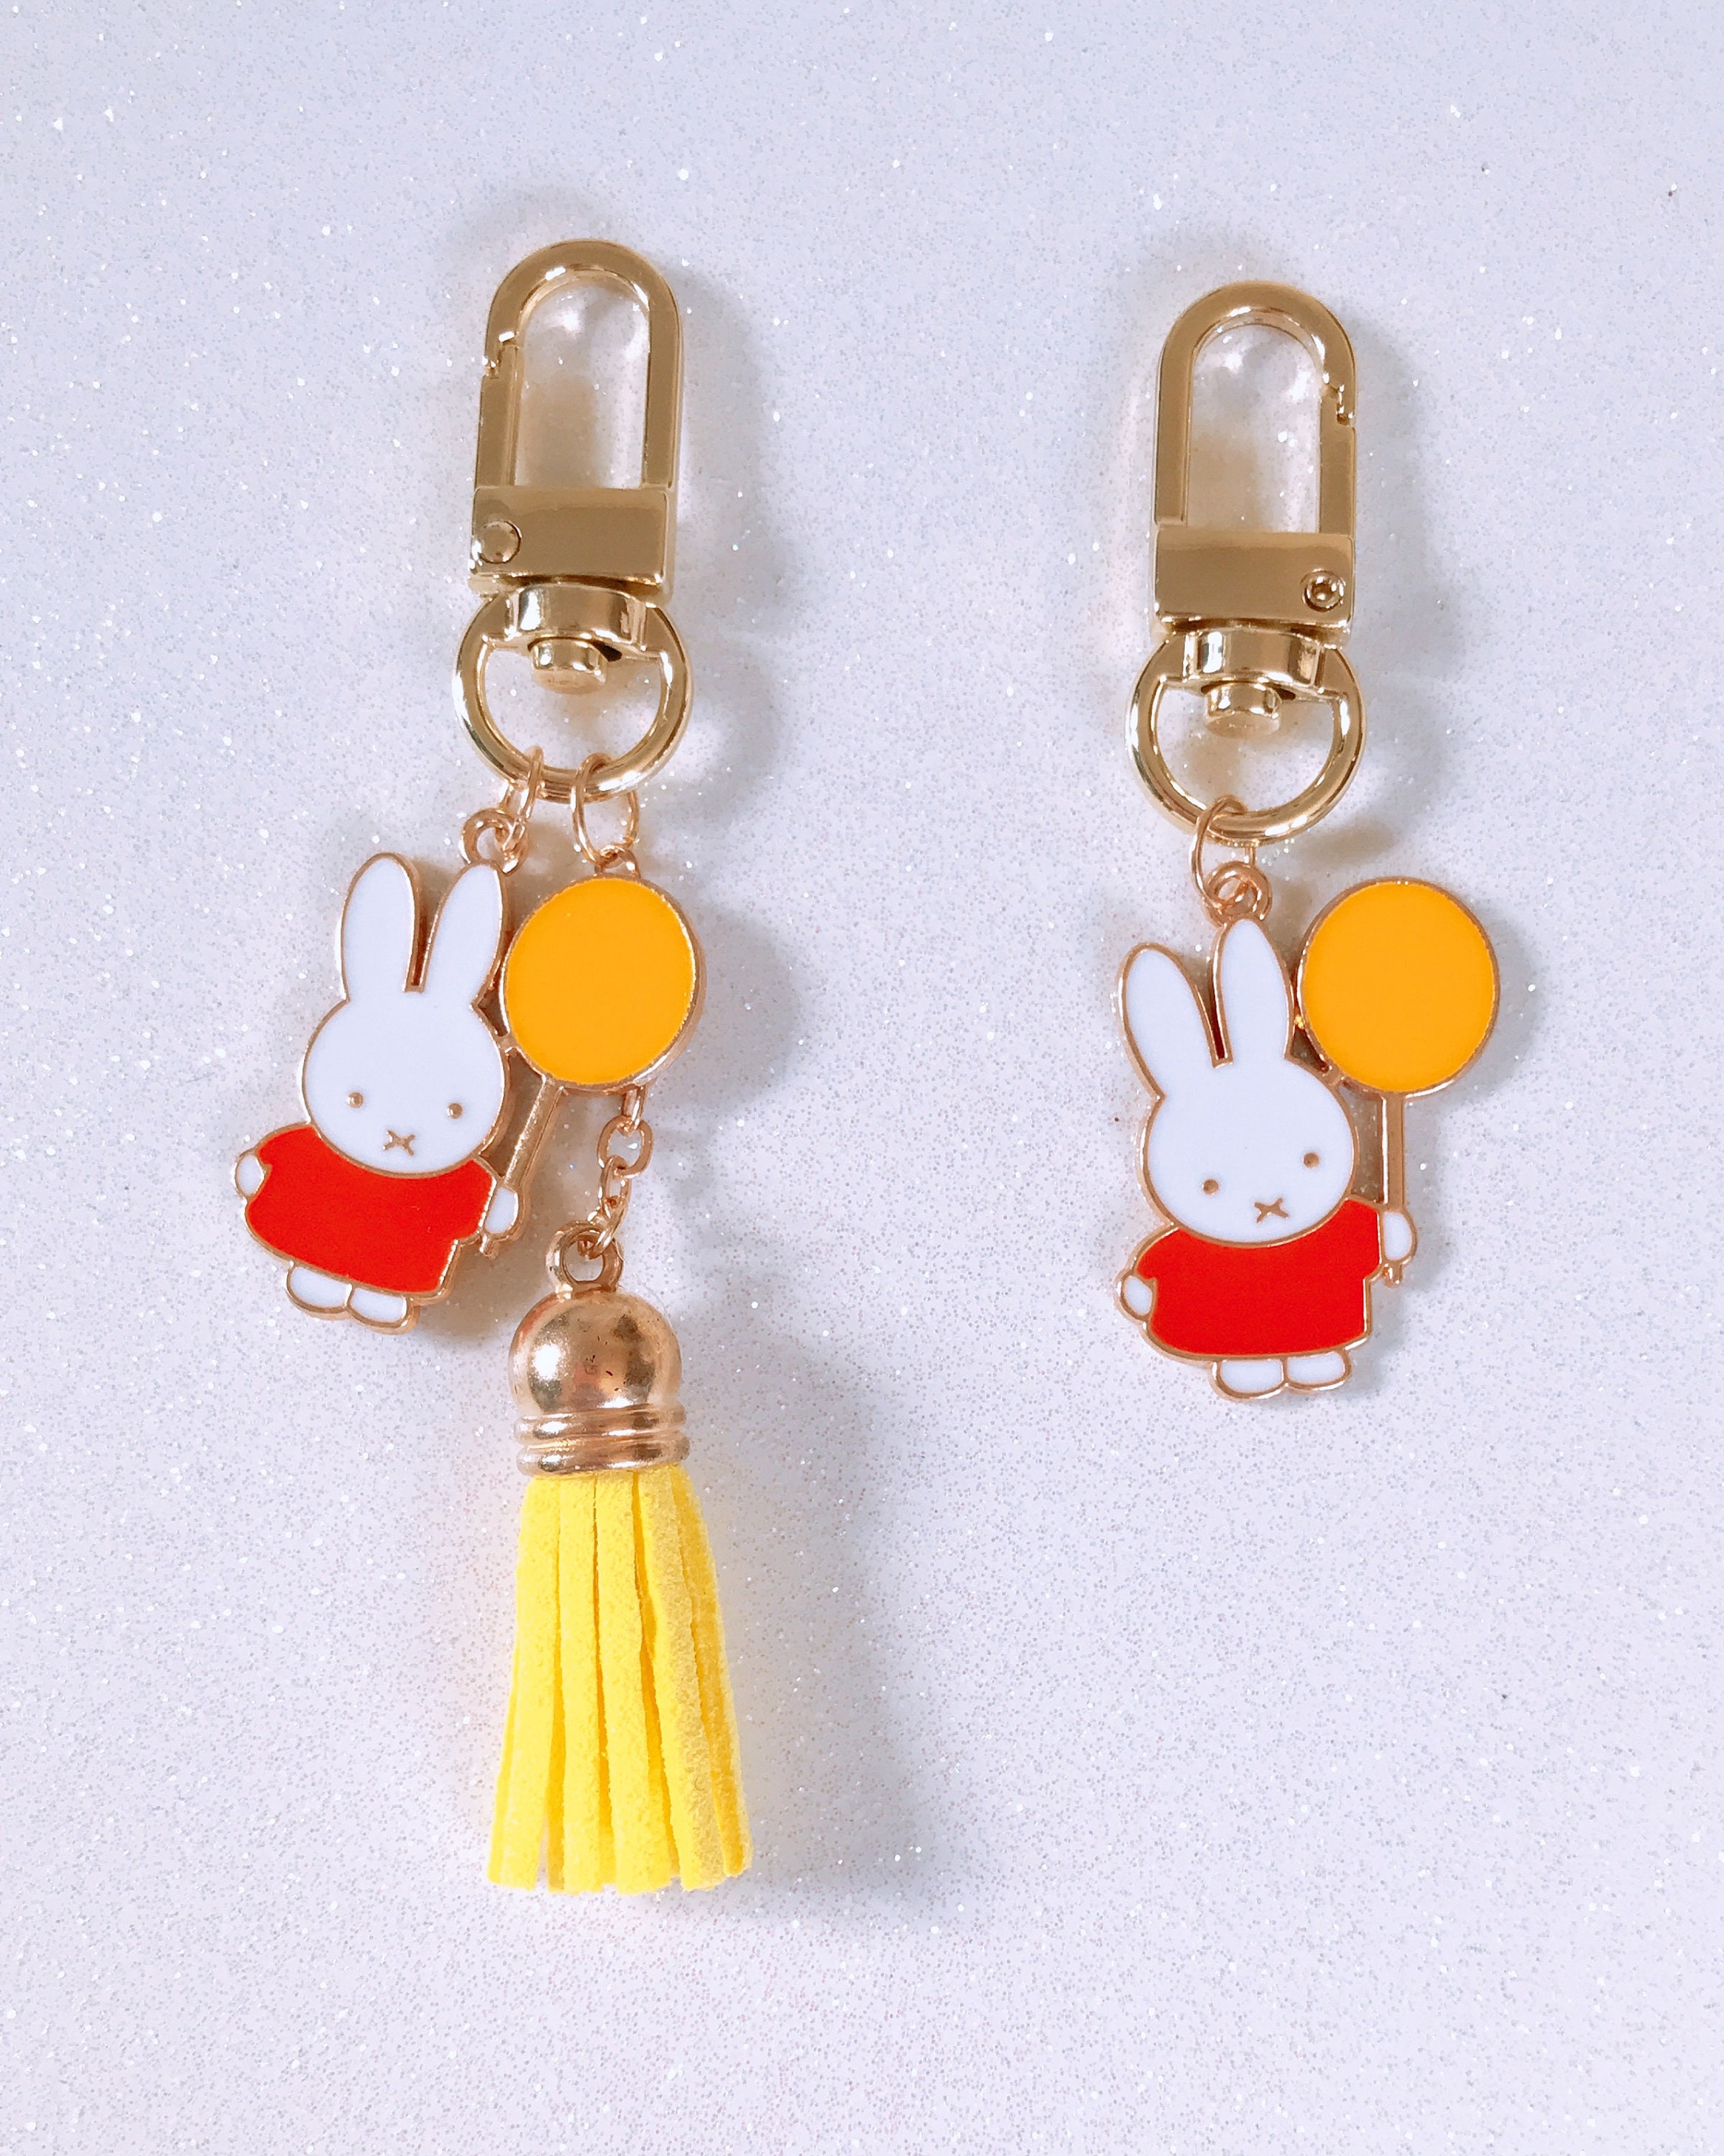 yolkcakescrafts Miffy Bunny Handmade Keychain Beaded Bag Charm | Customizable Bag Charm